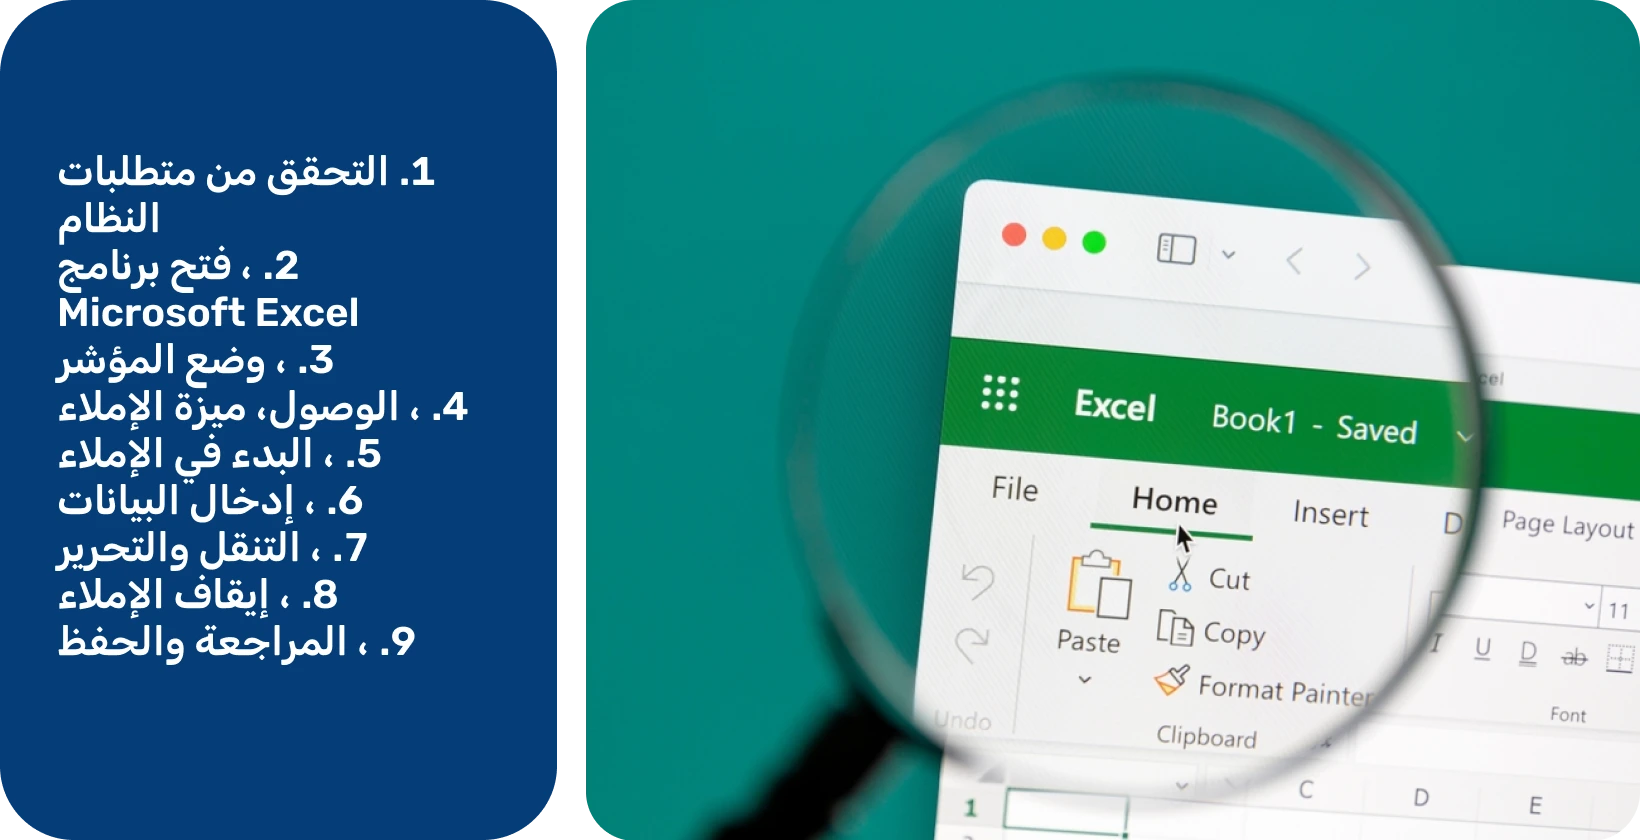 استخدم وظيفة الإملاء في Excel لنسخ الكلام إلى نص بكفاءة ، كما هو موضح من خلال الواجهة المكبرة.